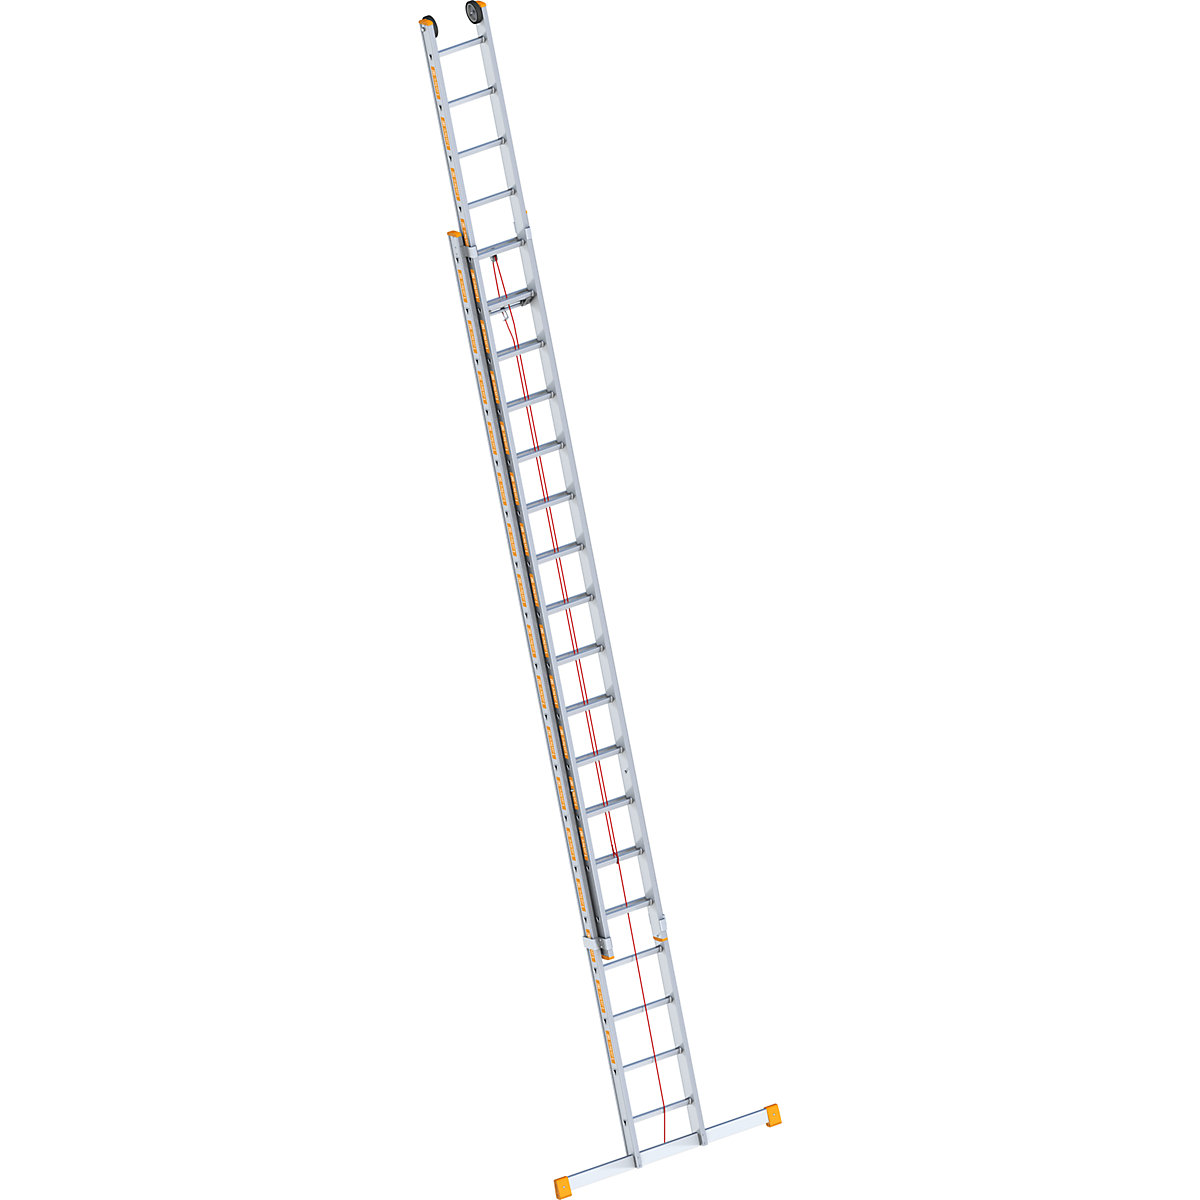 Aluminijske ljestve s vučnim užetom – Layher, 2-dijelna izvedba, s mogućnošću izvlačenja, uklj. nosač, 2 x 18 prečki